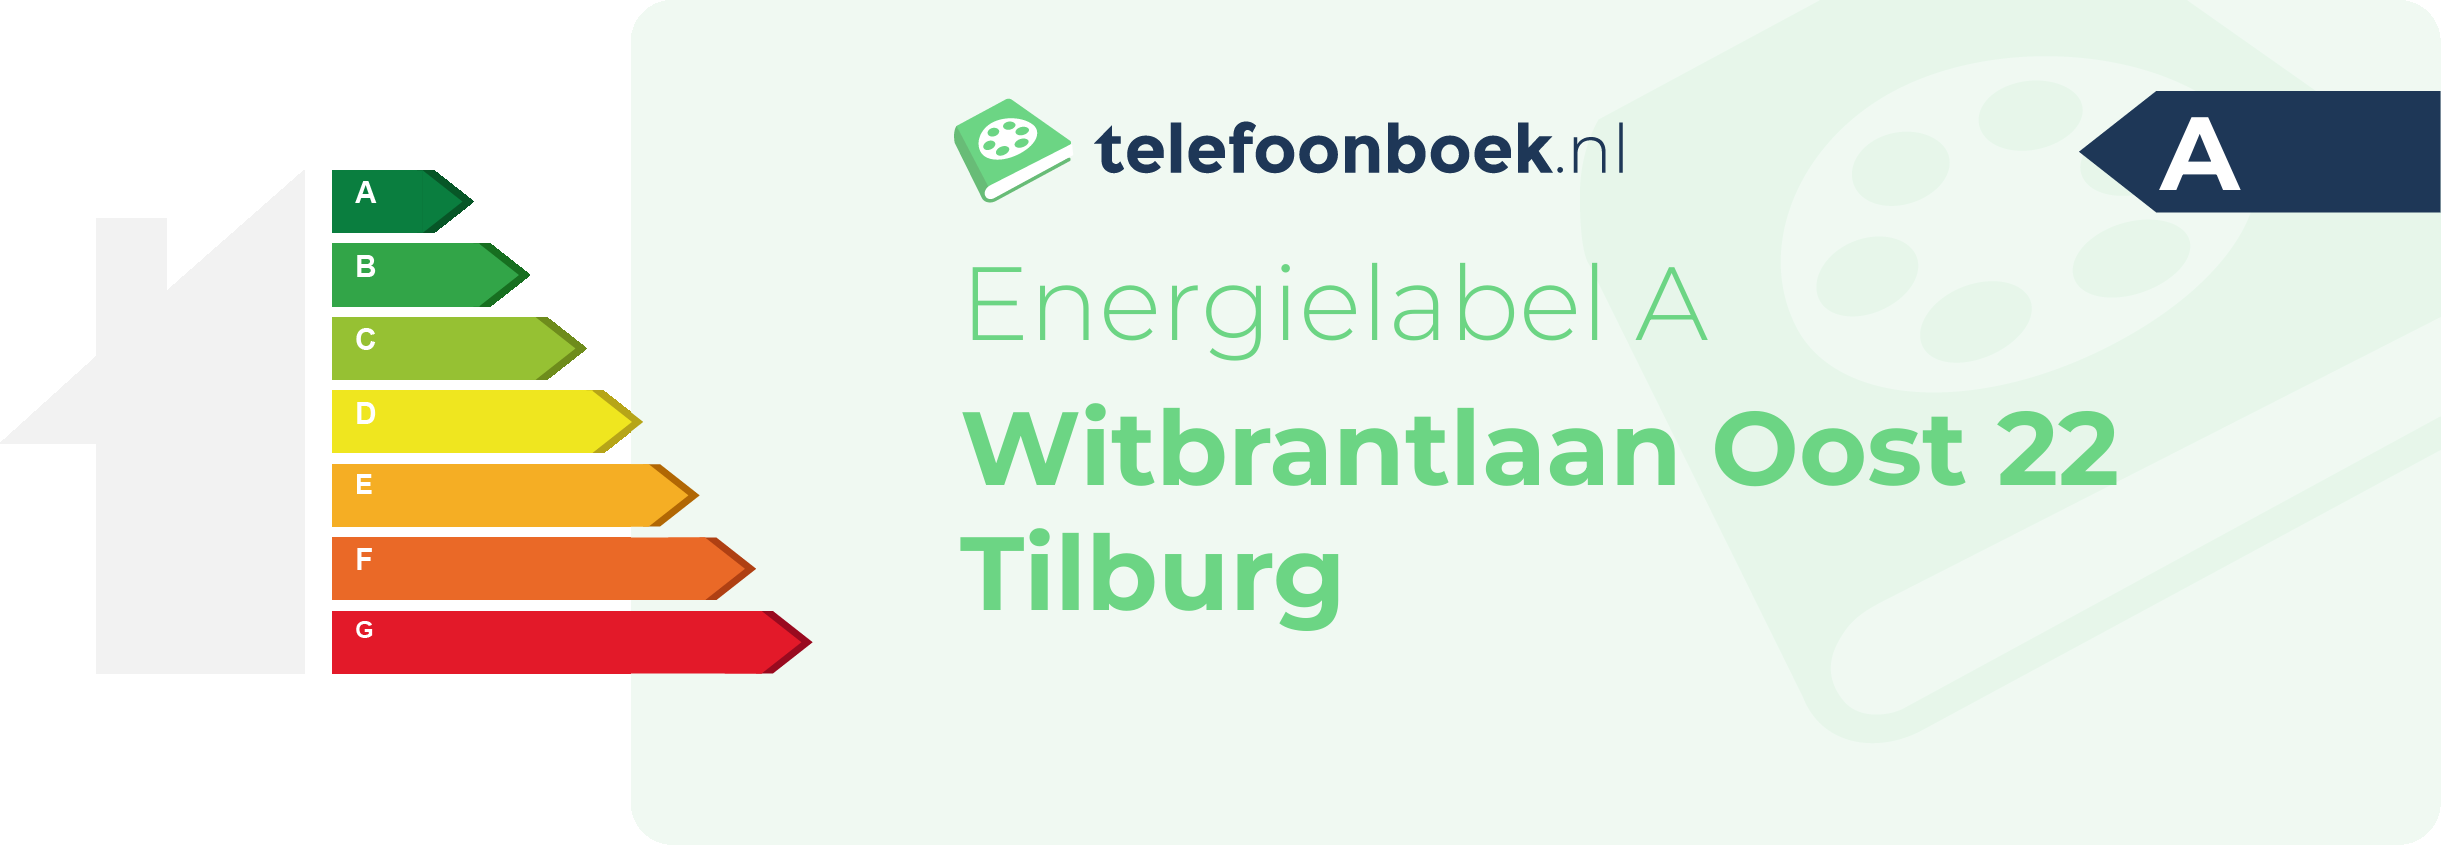 Energielabel Witbrantlaan Oost 22 Tilburg